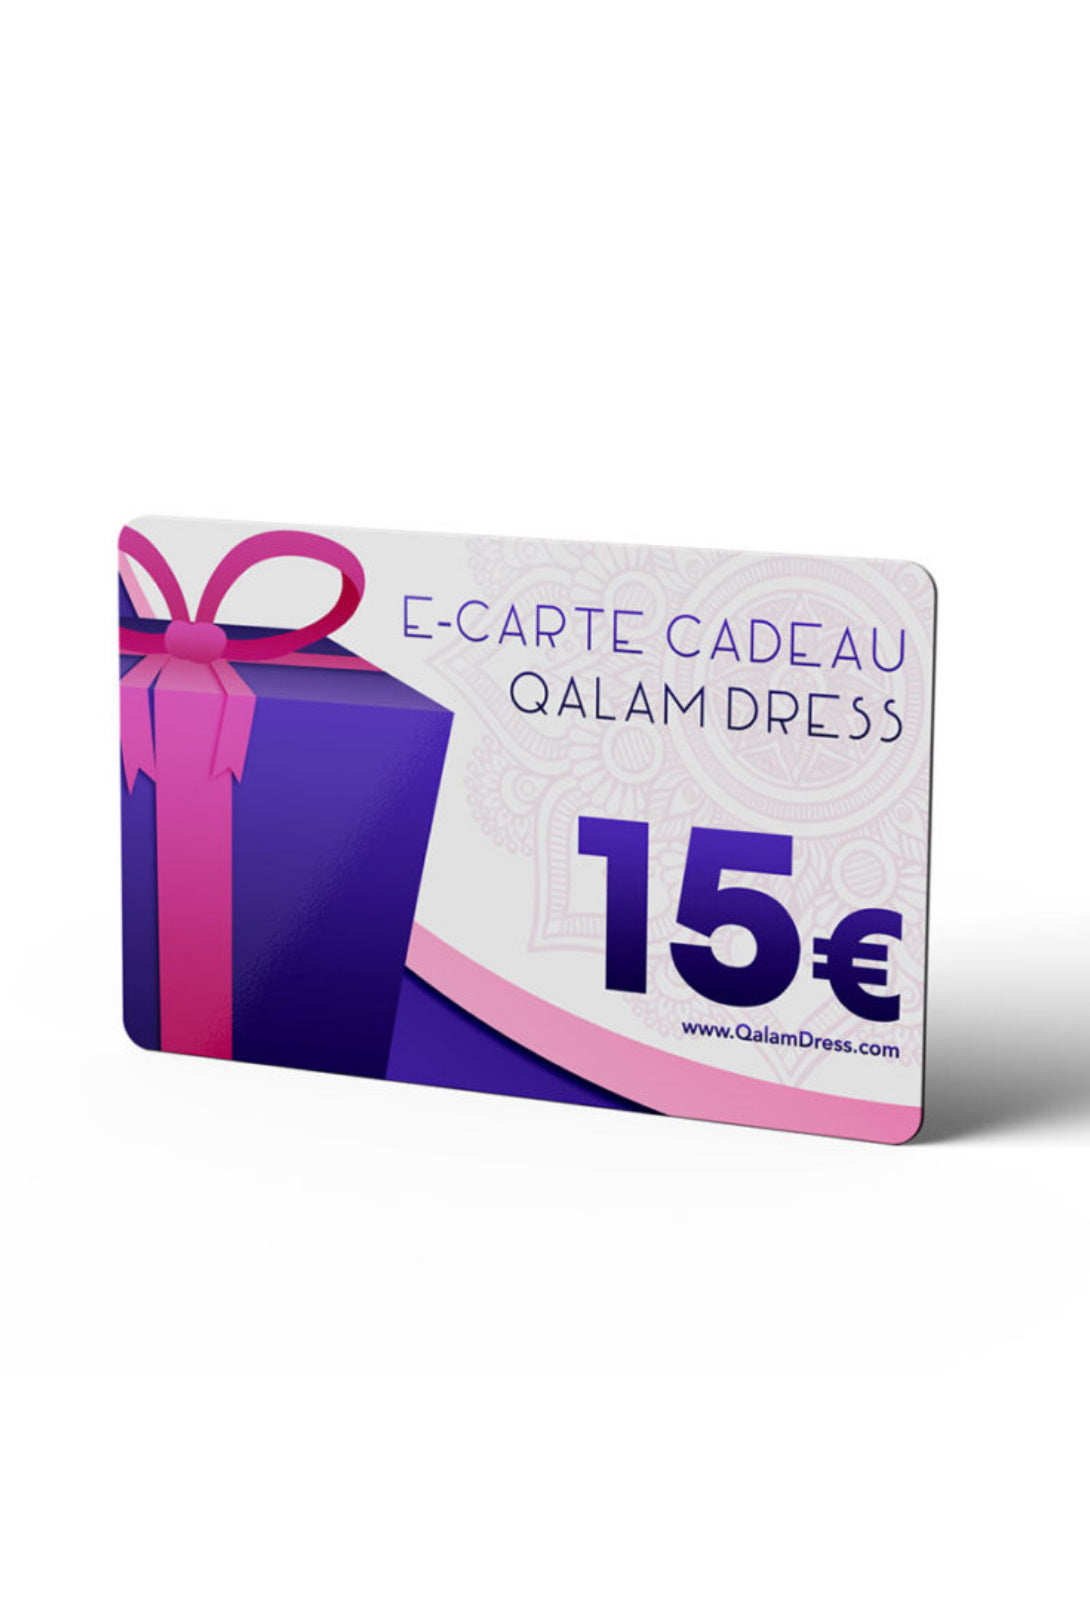 E-CARTE CADEAU 15€